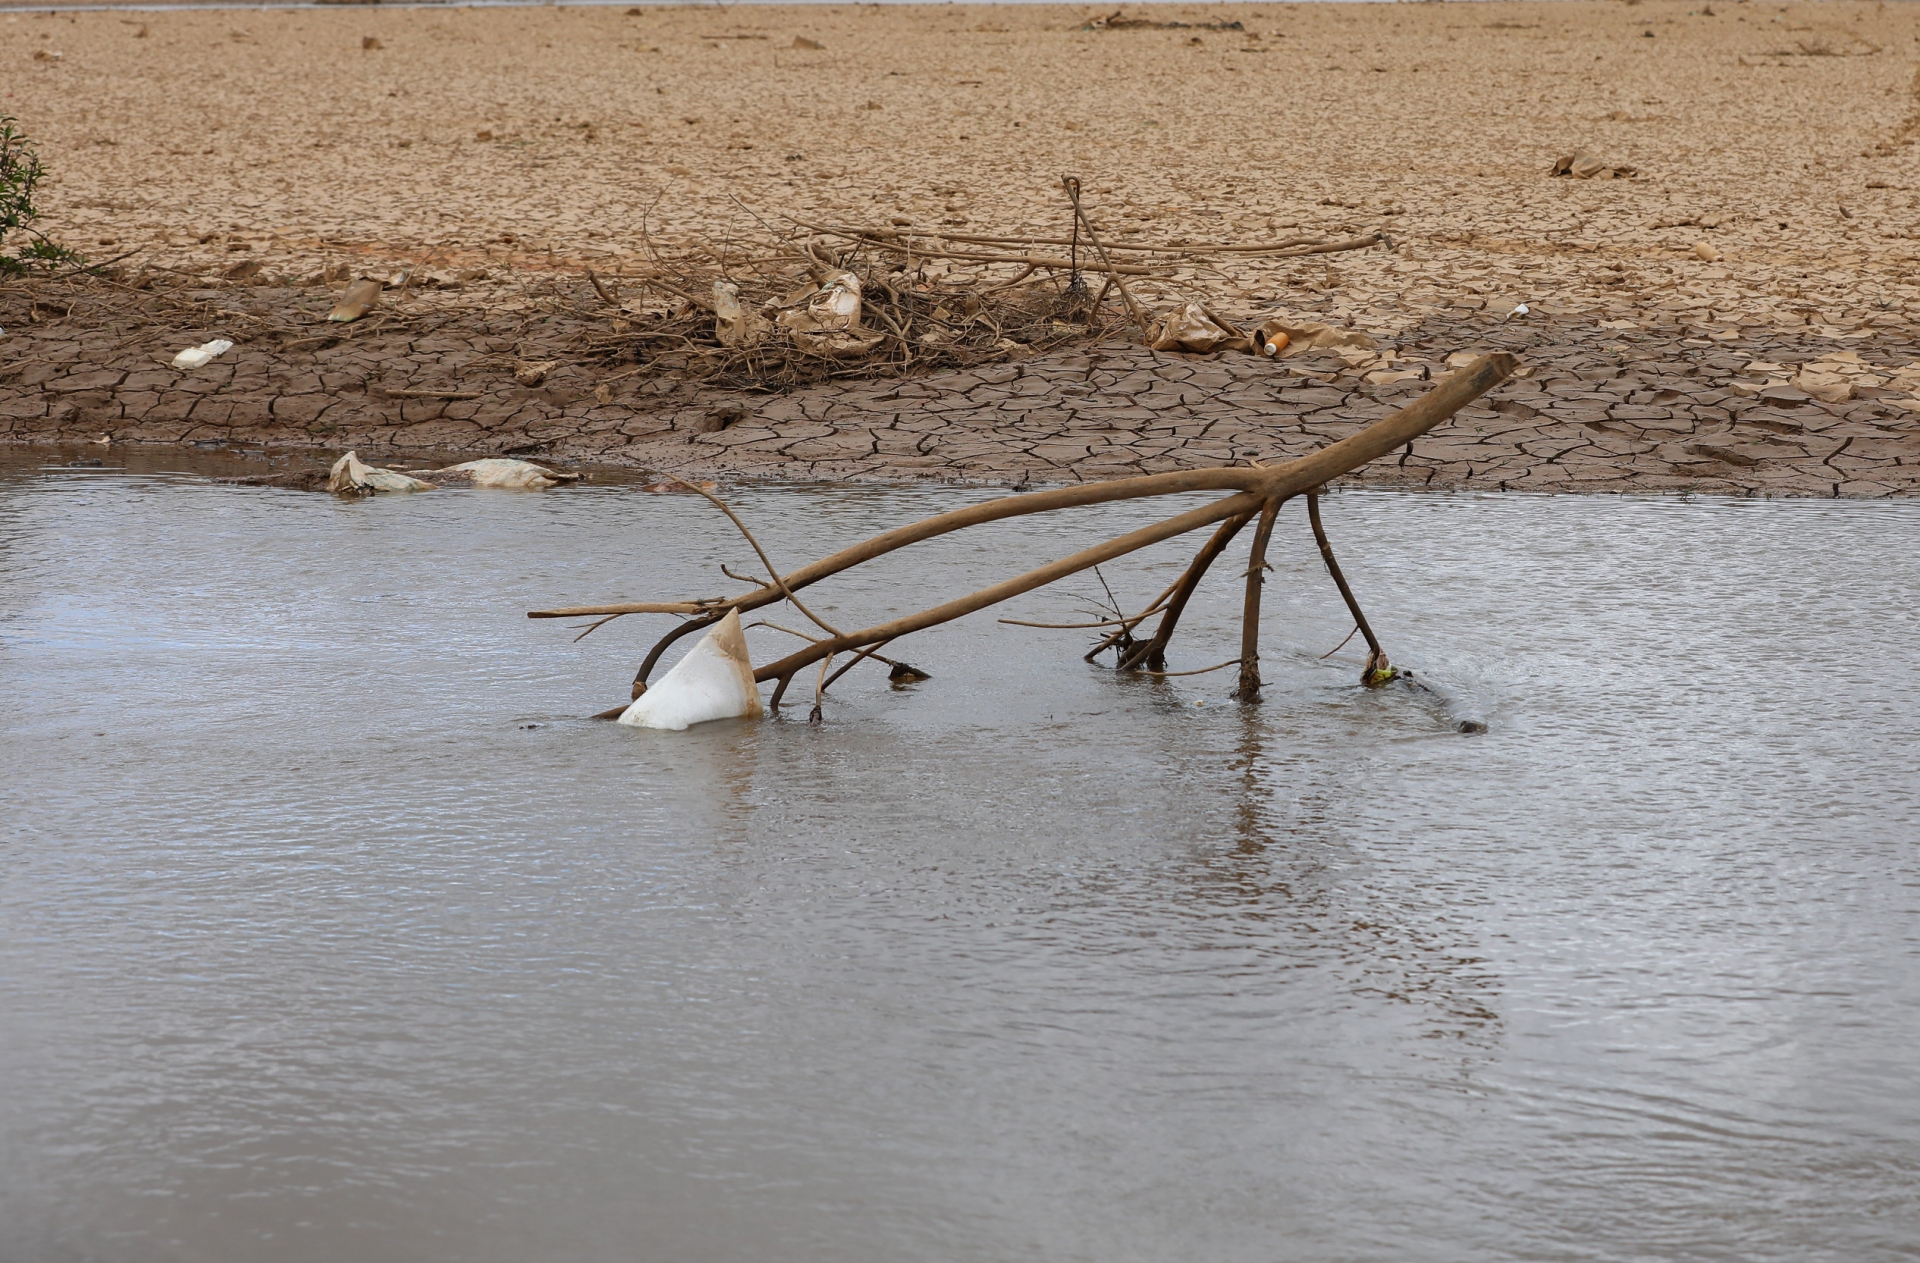 Hiện nay, mặt hồ Đan Kia - Suối Vàng (Lâm Đồng) phía thượng nguồn khô khốc, đất nứt nẻ. Ảnh: Cộng tác viên 